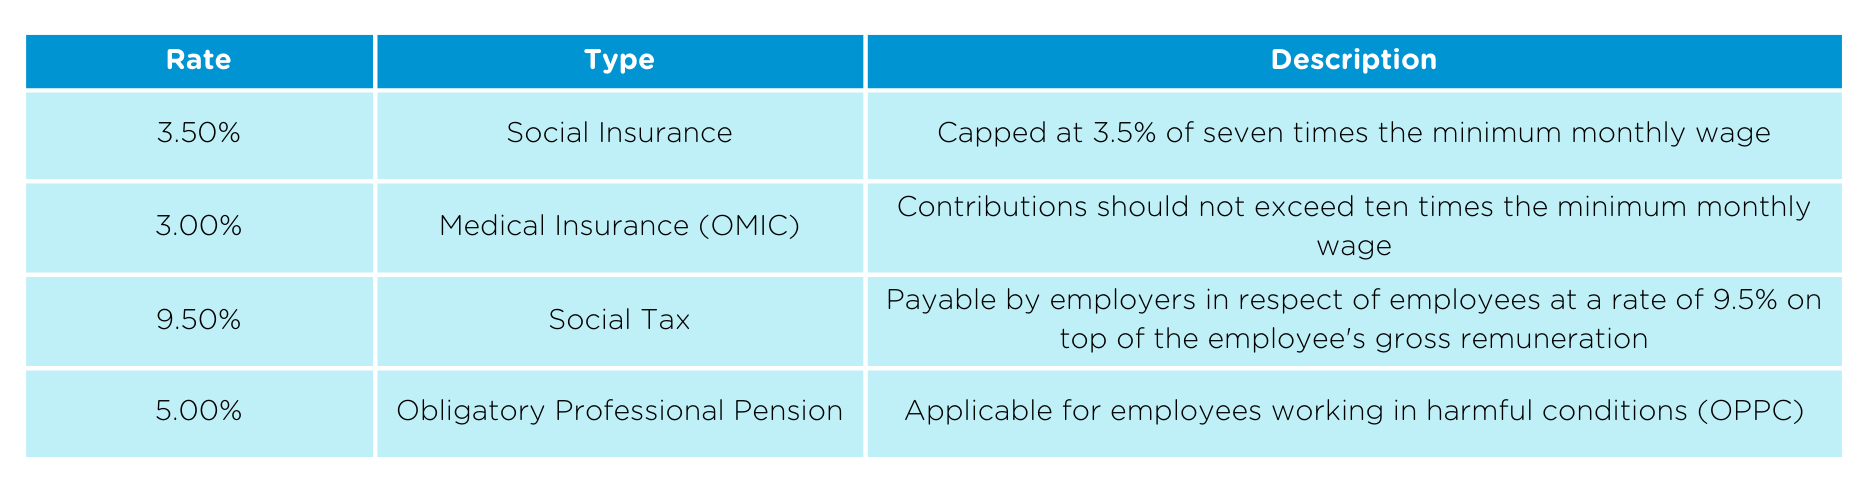 Kazakh employer rate-1